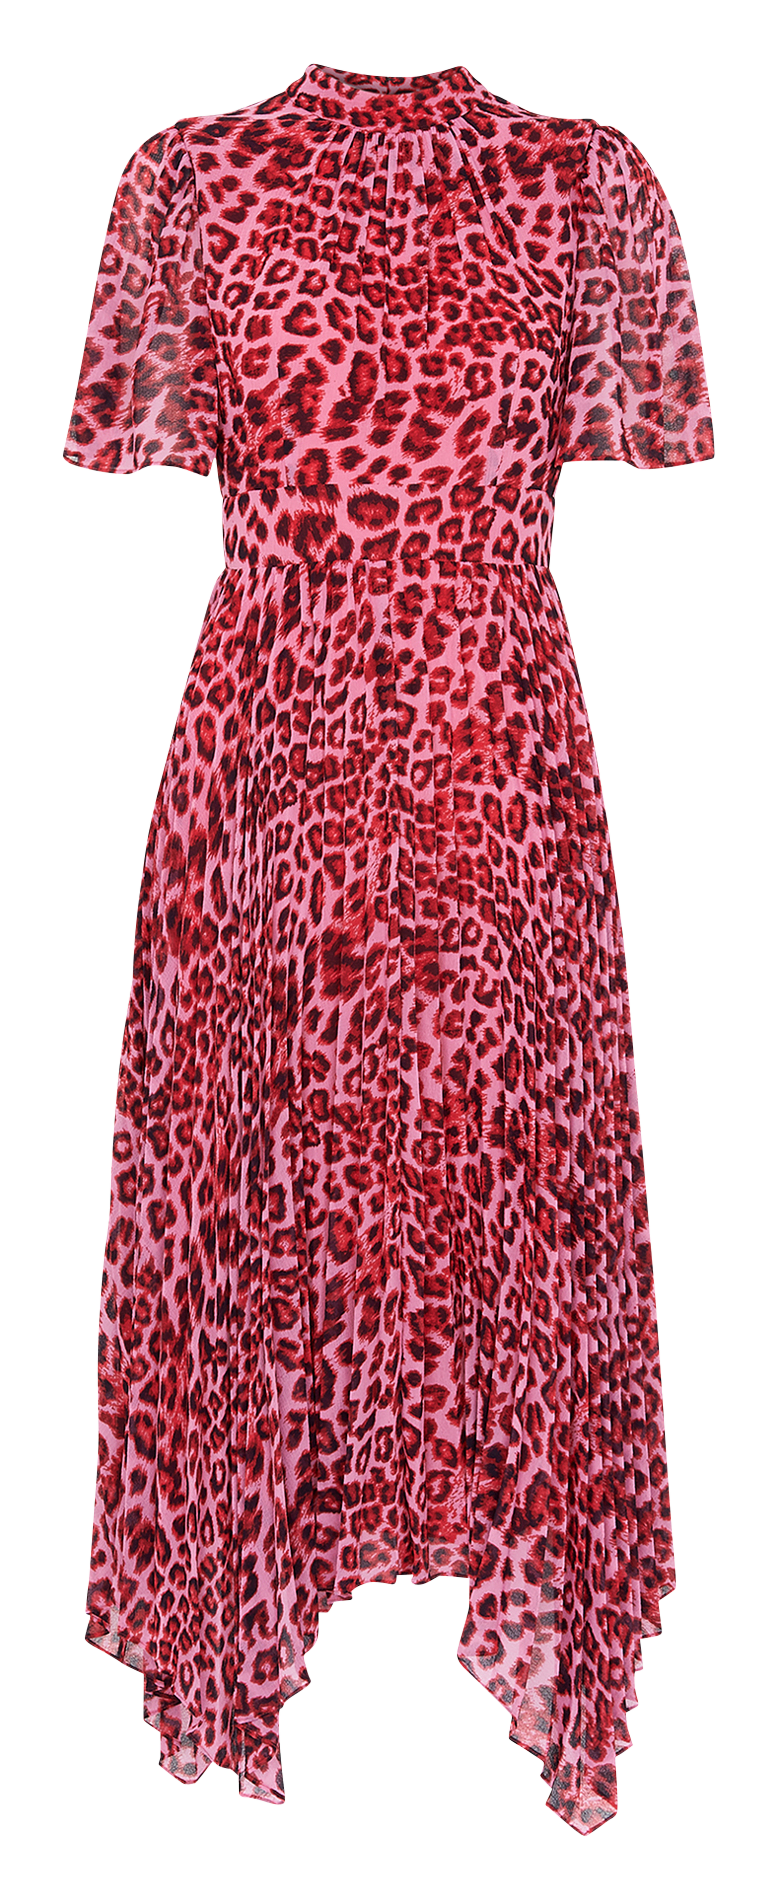 Leopard Print High-neck Midi Dress Pink ...